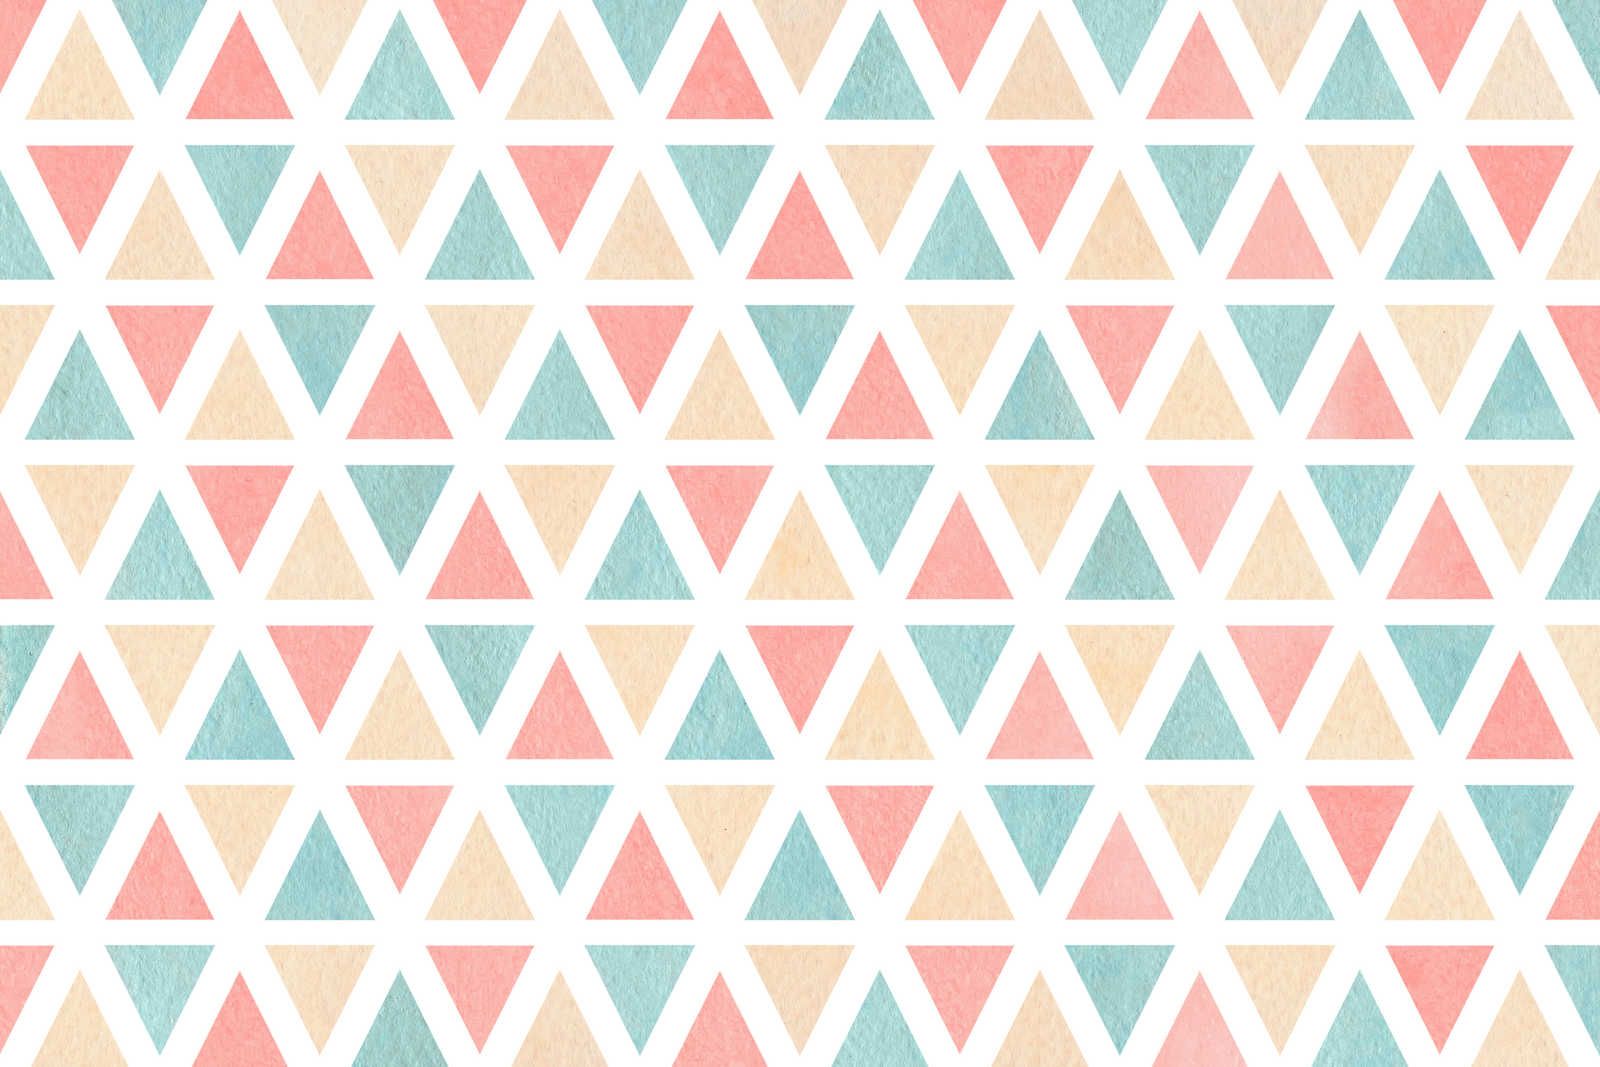             Leinwand grafisches Muster mit bunten Dreiecken – 90 cm x 60 cm
        